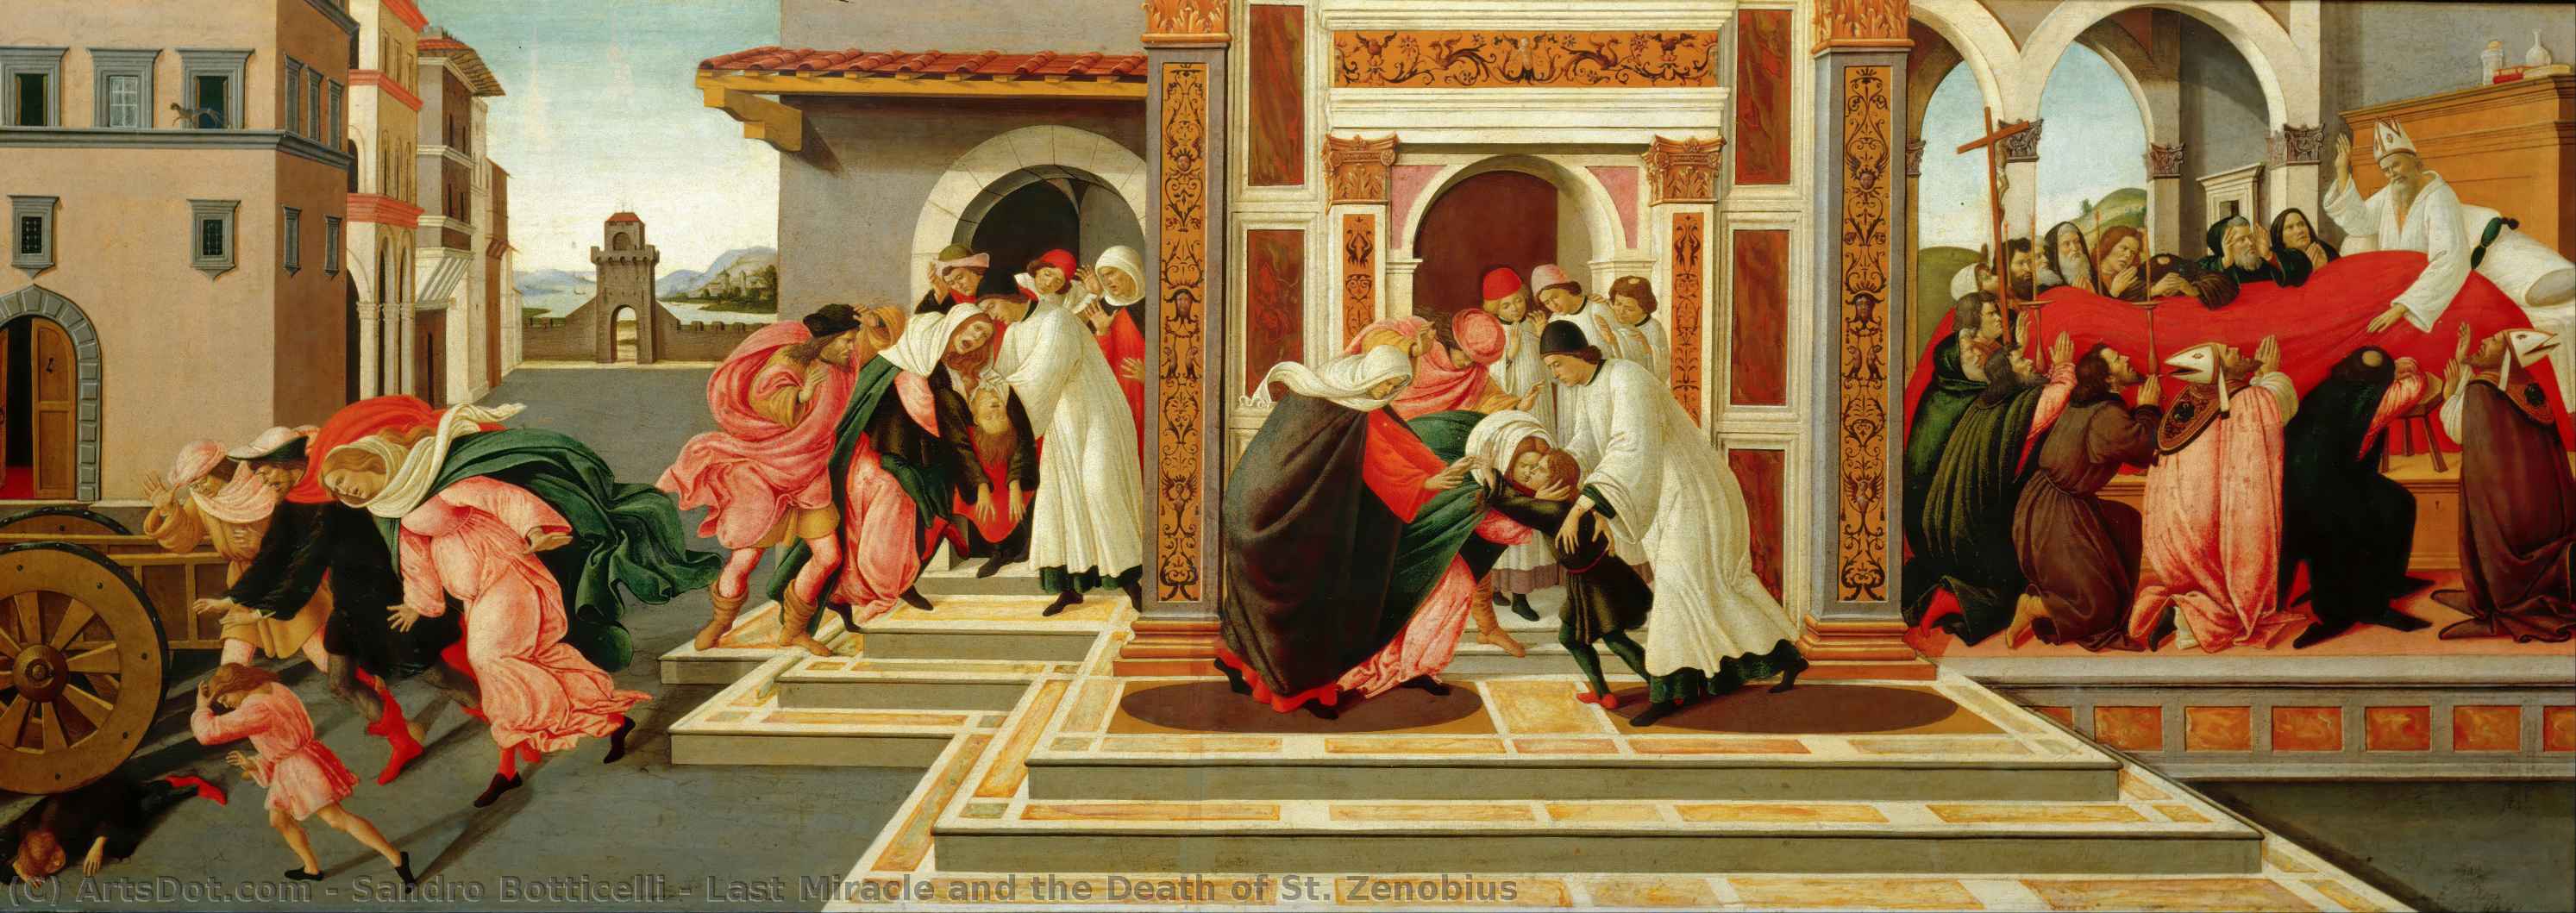 WikiOO.org - Енциклопедія образотворчого мистецтва - Живопис, Картини
 Sandro Botticelli - Last Miracle and the Death of St. Zenobius